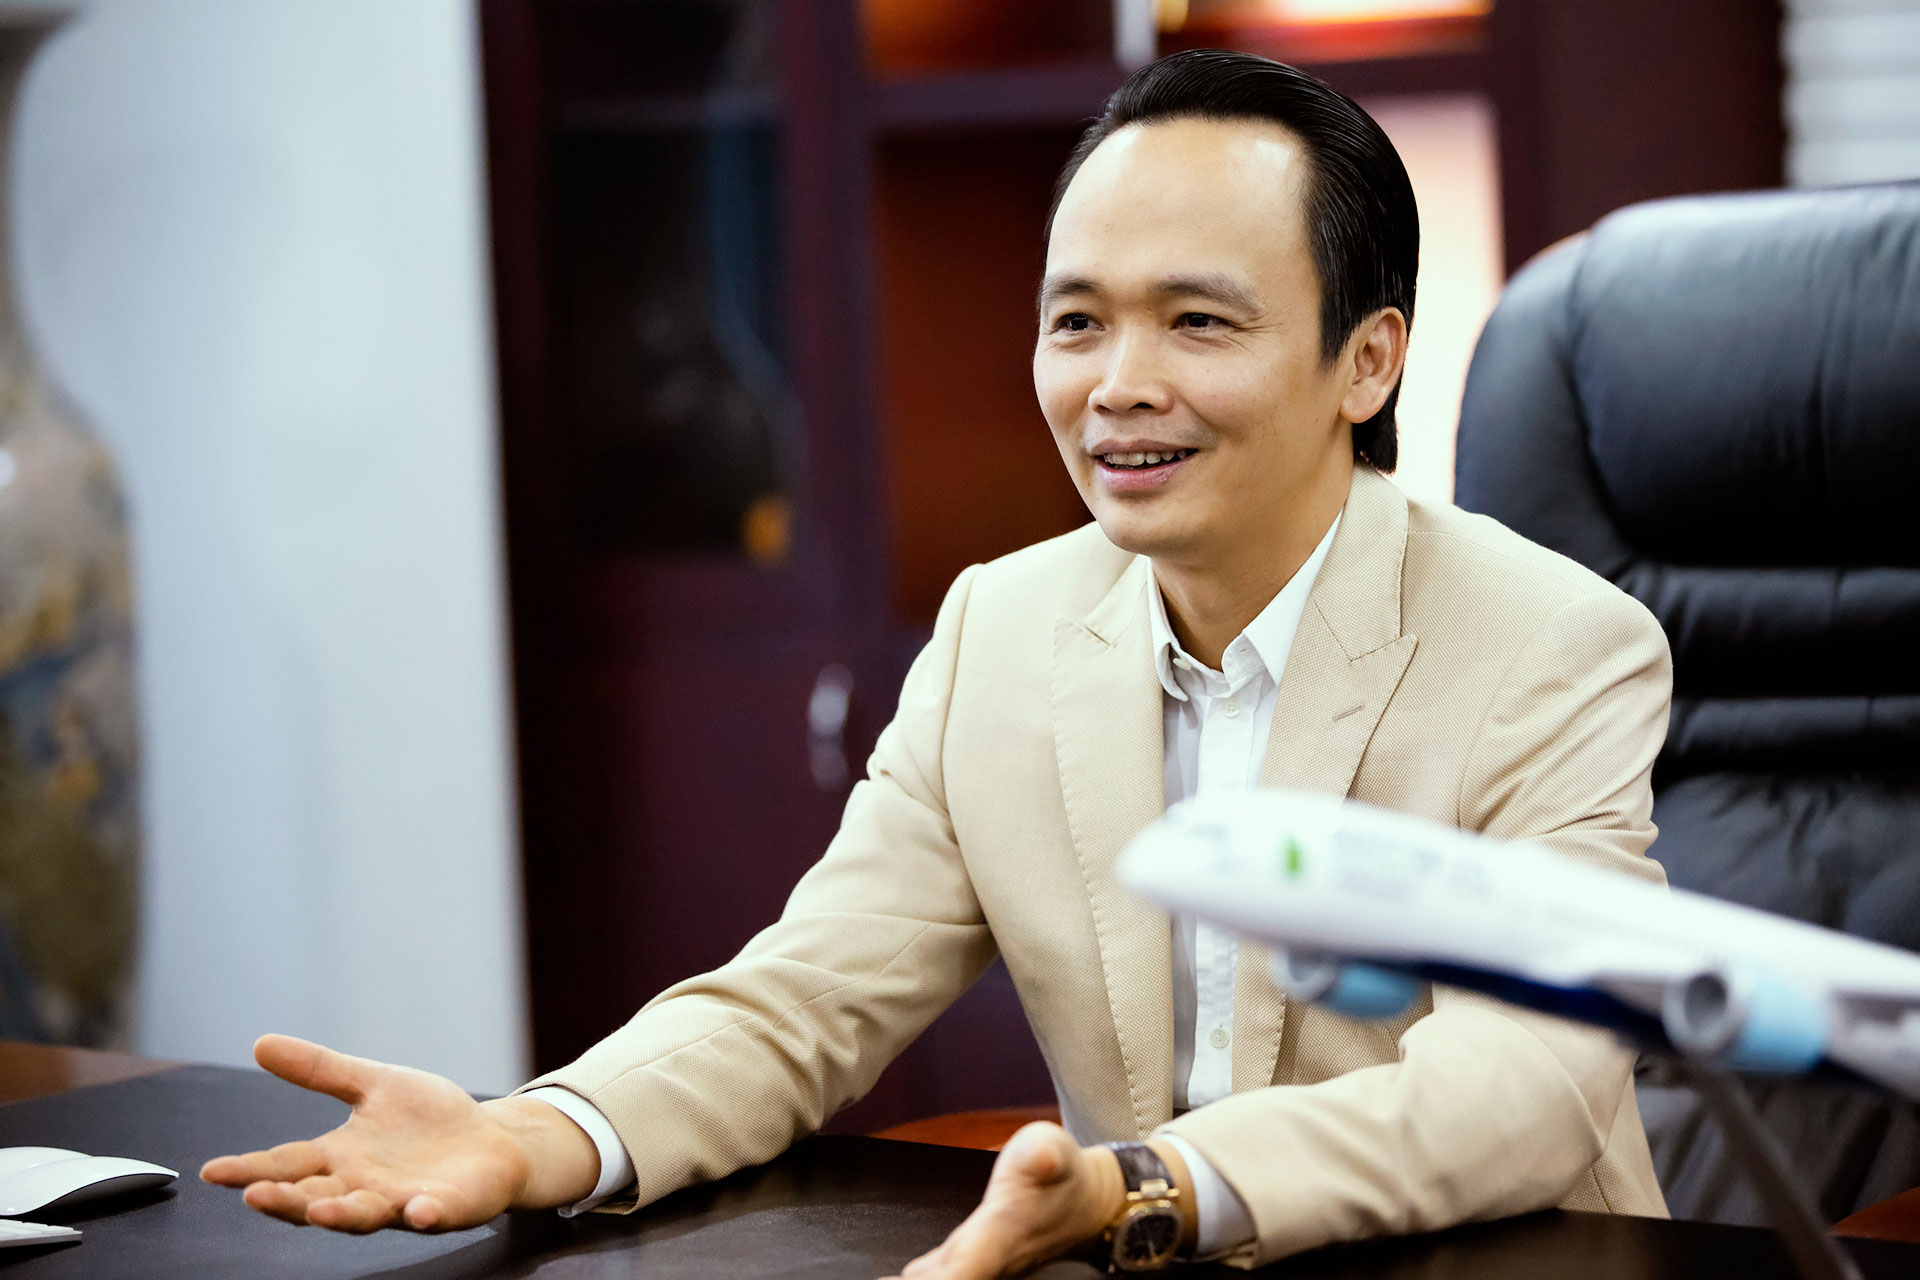 Hồ sơ doanh nghiệp - 685 nhà đầu tư tố cáo ông Trịnh Văn Quyết, đề nghị bồi thường thiệt hại